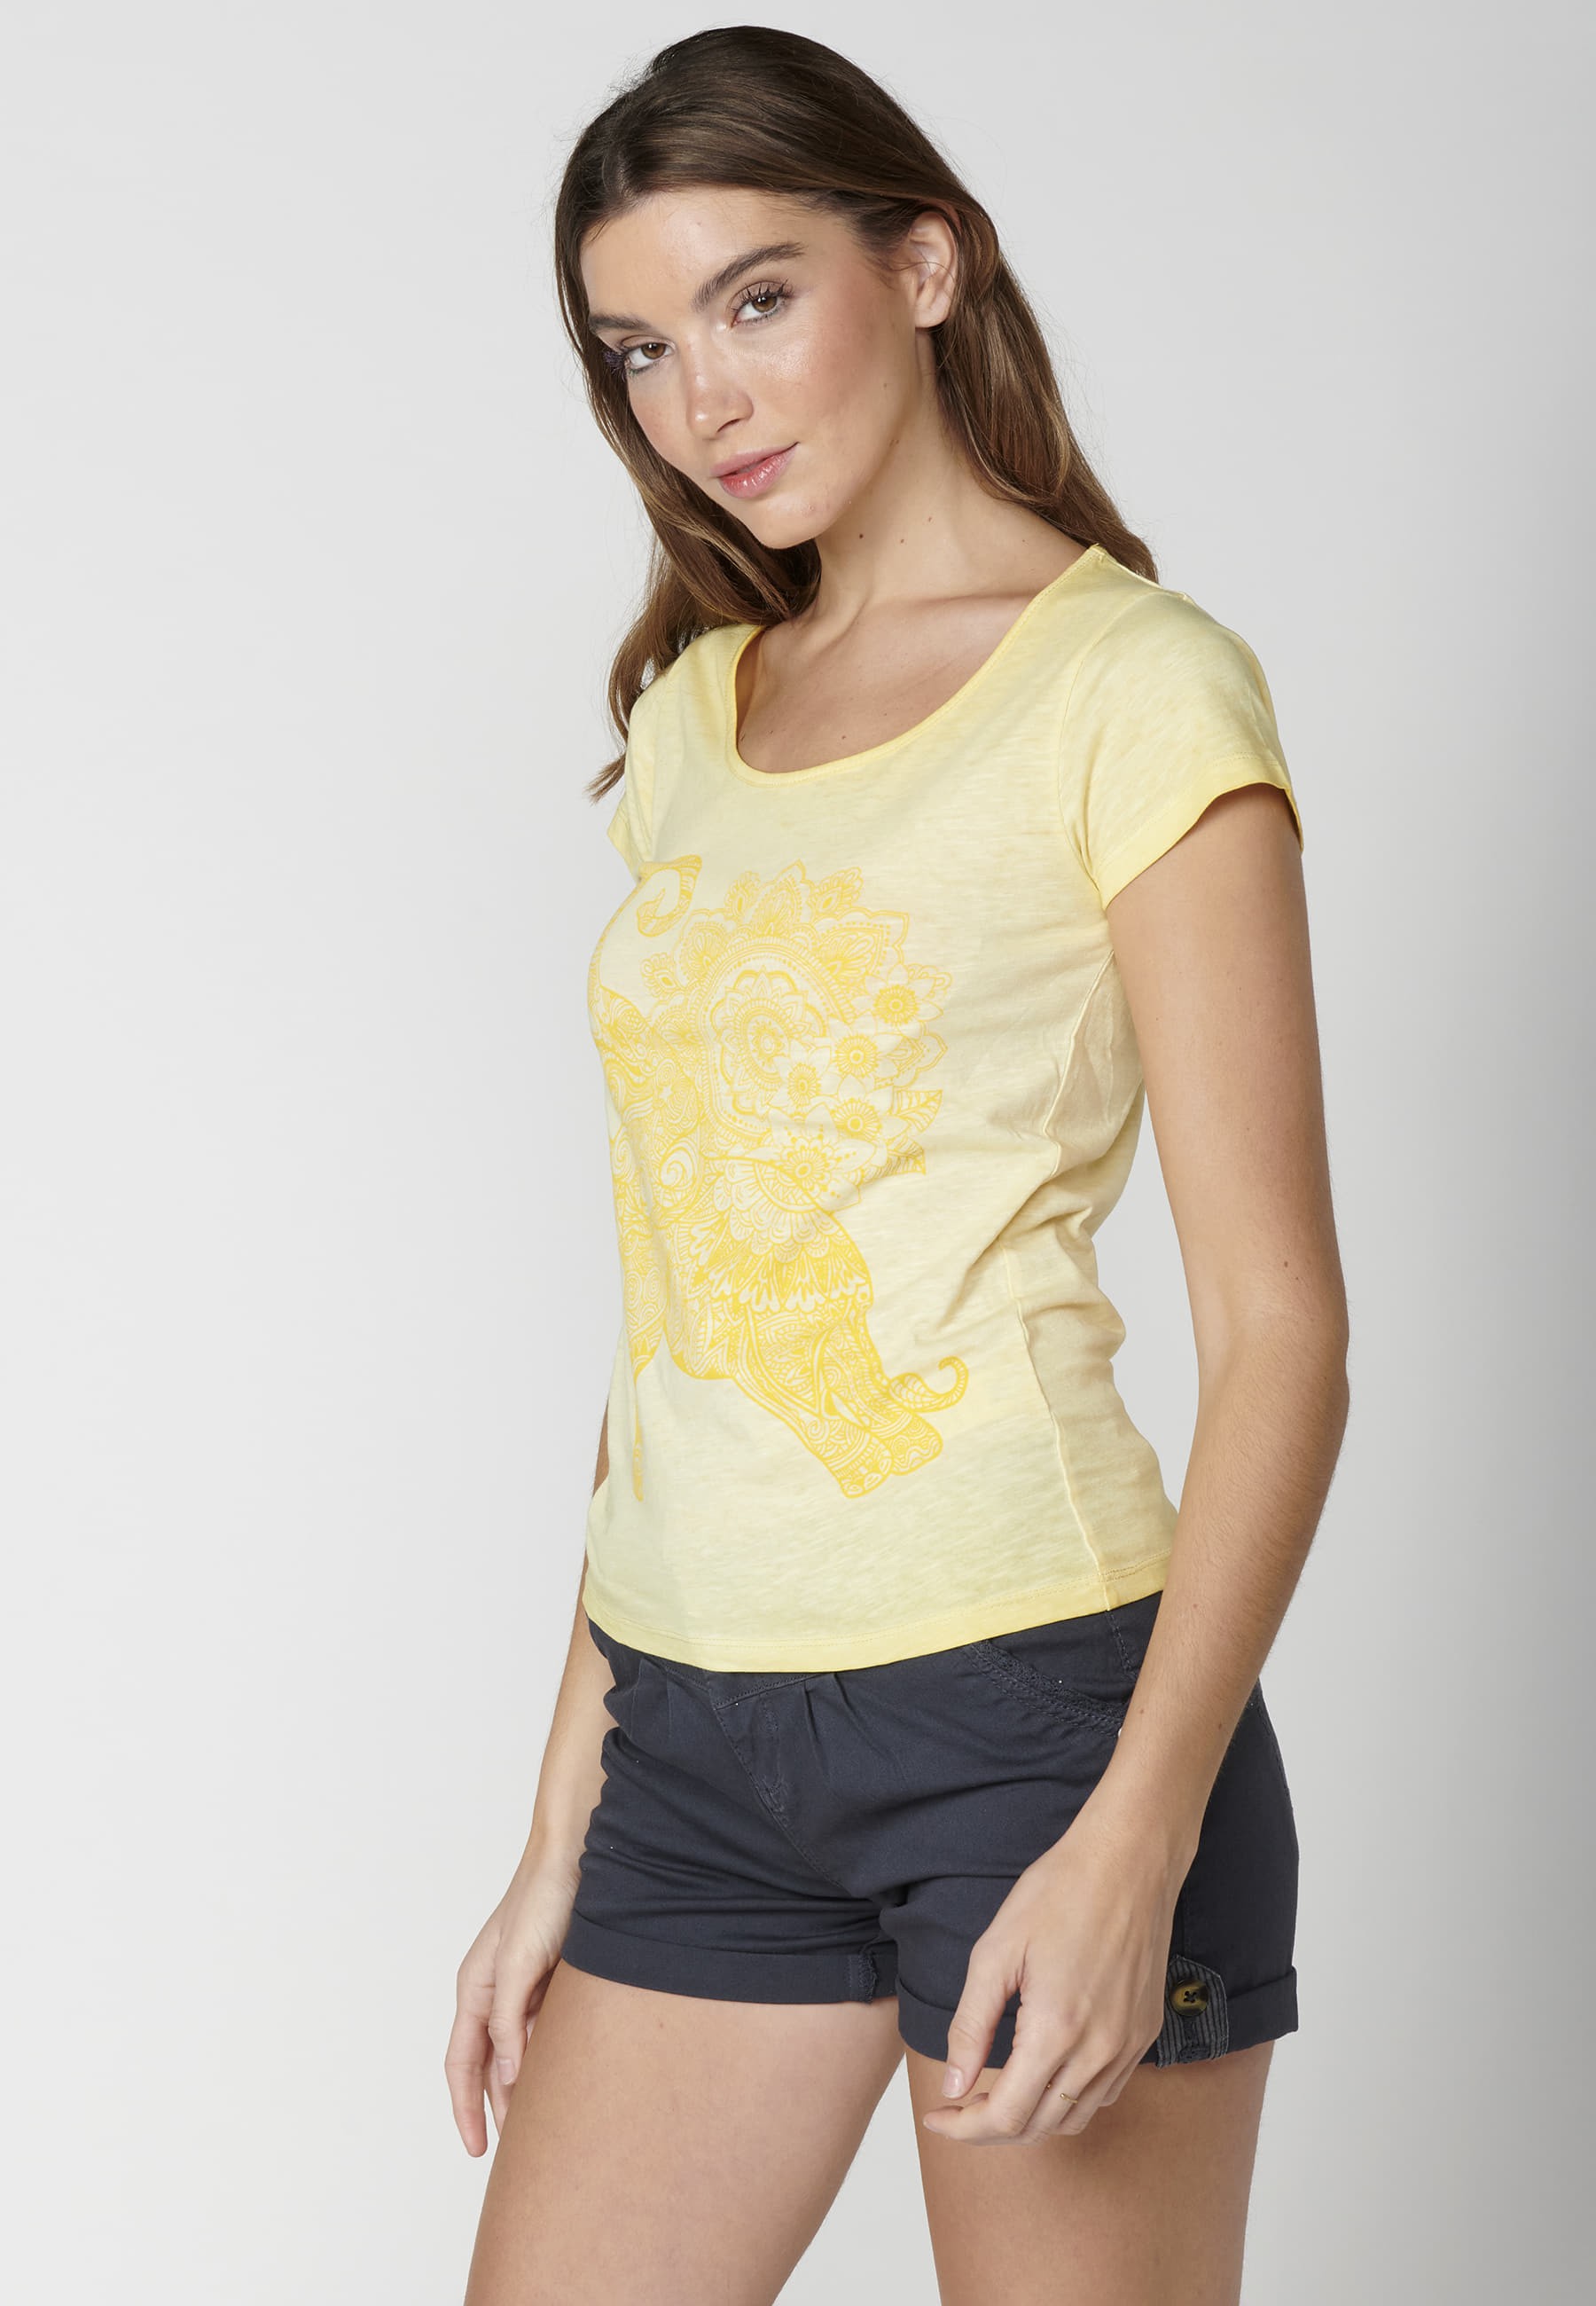 Top manga corta de Algodón bordado floral color Amarillo para Mujer